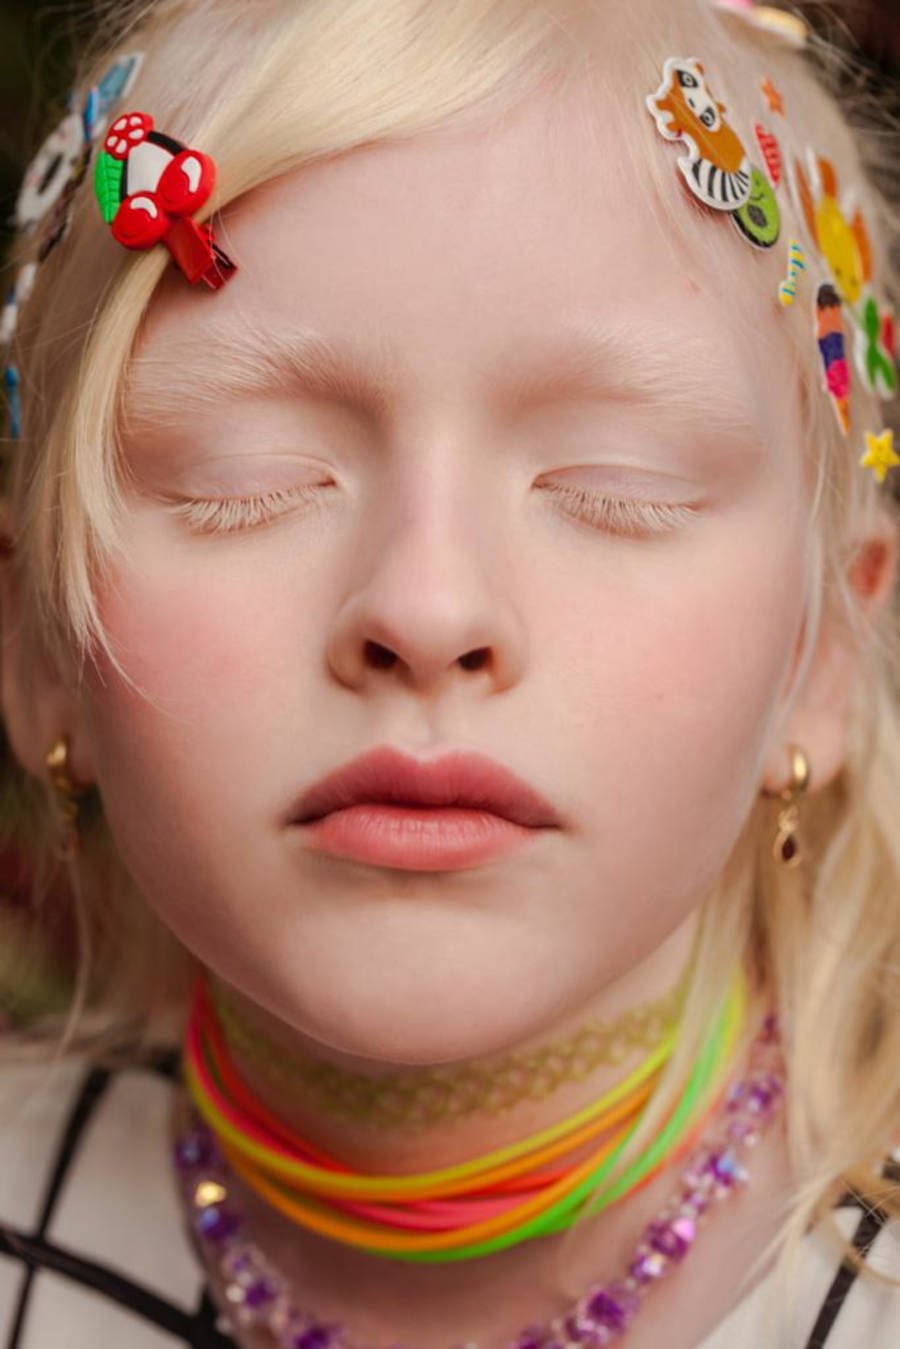 Imagem aproximada do rosto de uma criança loira com stickers no cabelo e colares coloridos